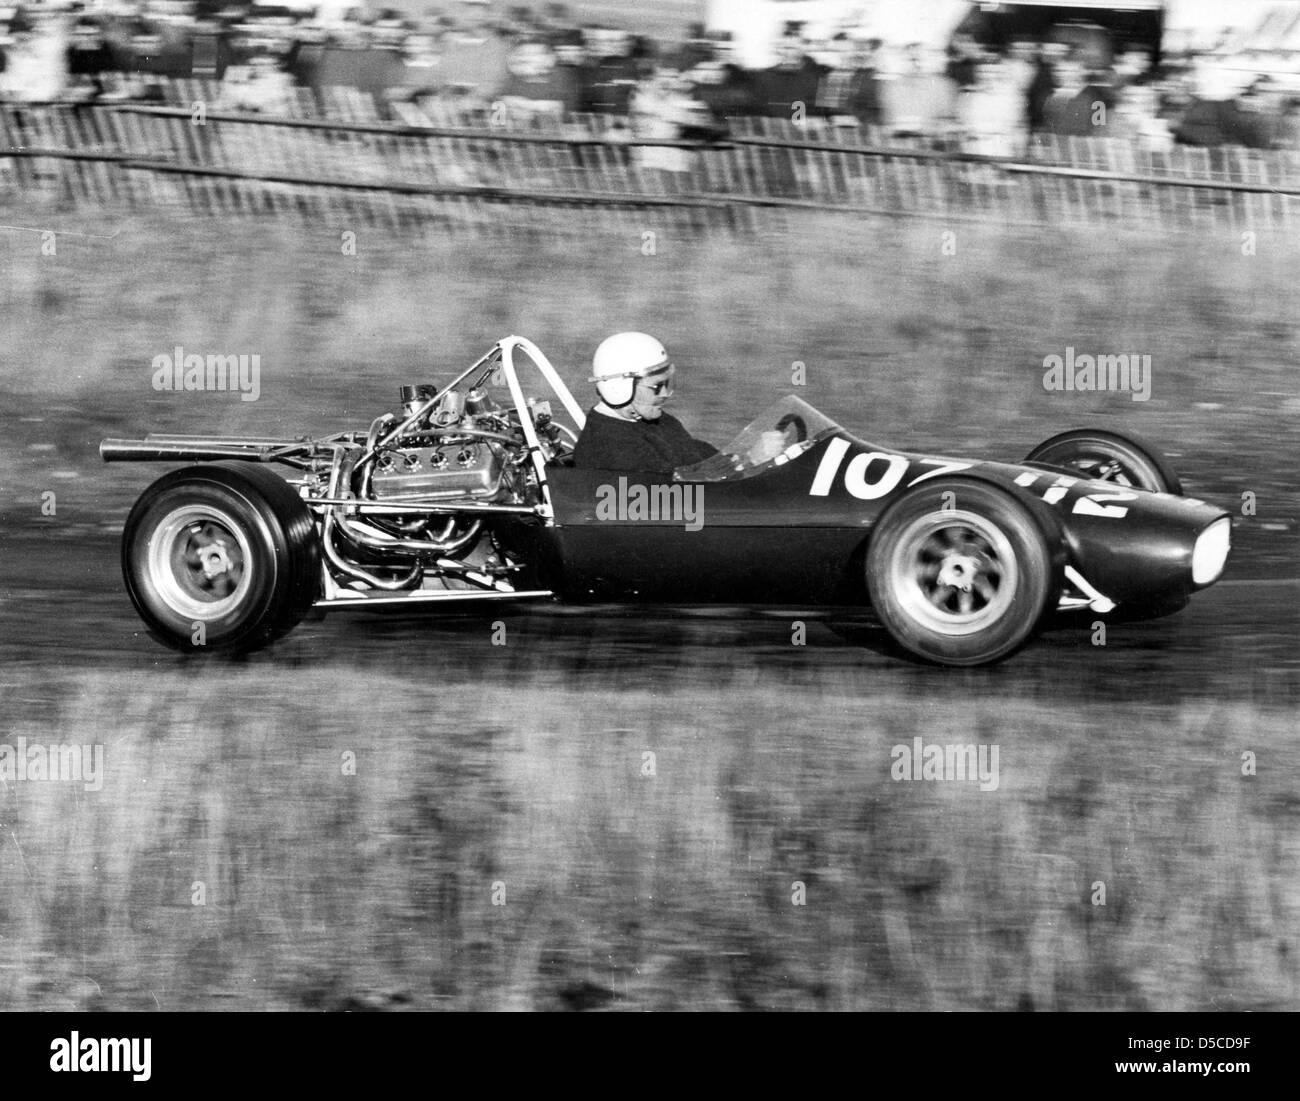 Homme conduisant une voiture de course monoplace propulsée par V8 à Loton Park Hill Climb en 1967 PHOTO DE DAVID BAGNALL Banque D'Images